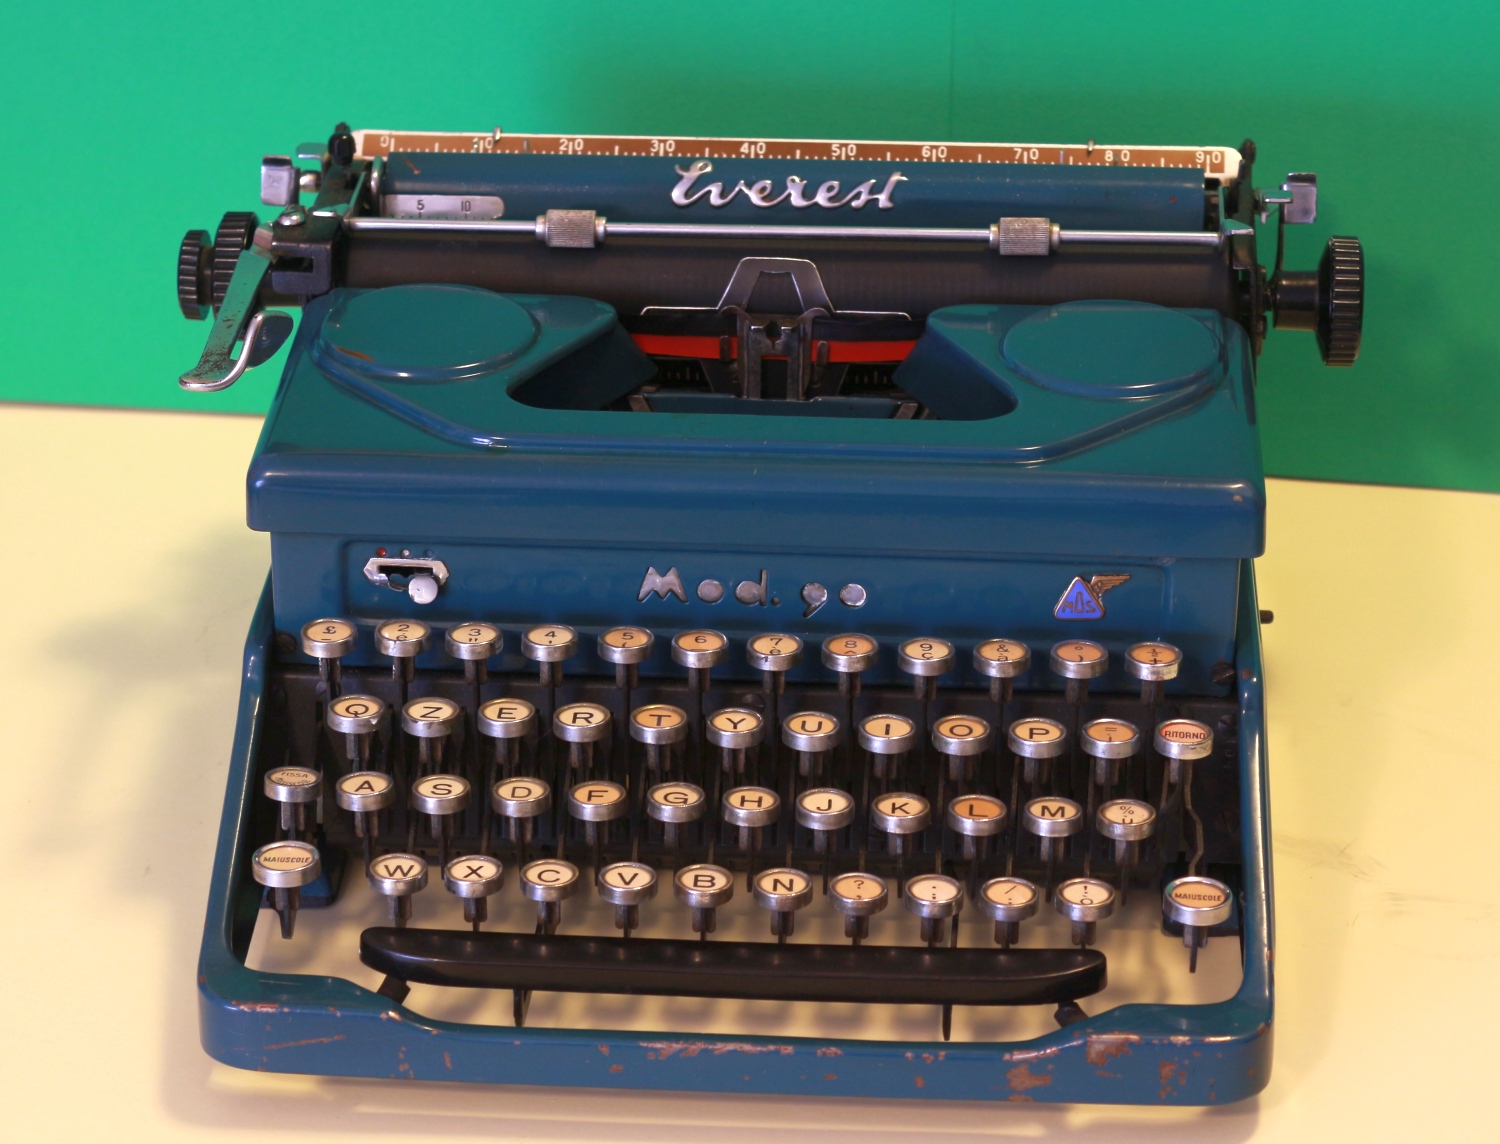 restauro macchine per scrivere Olivetti Everest Milano - www.marinoripara.com